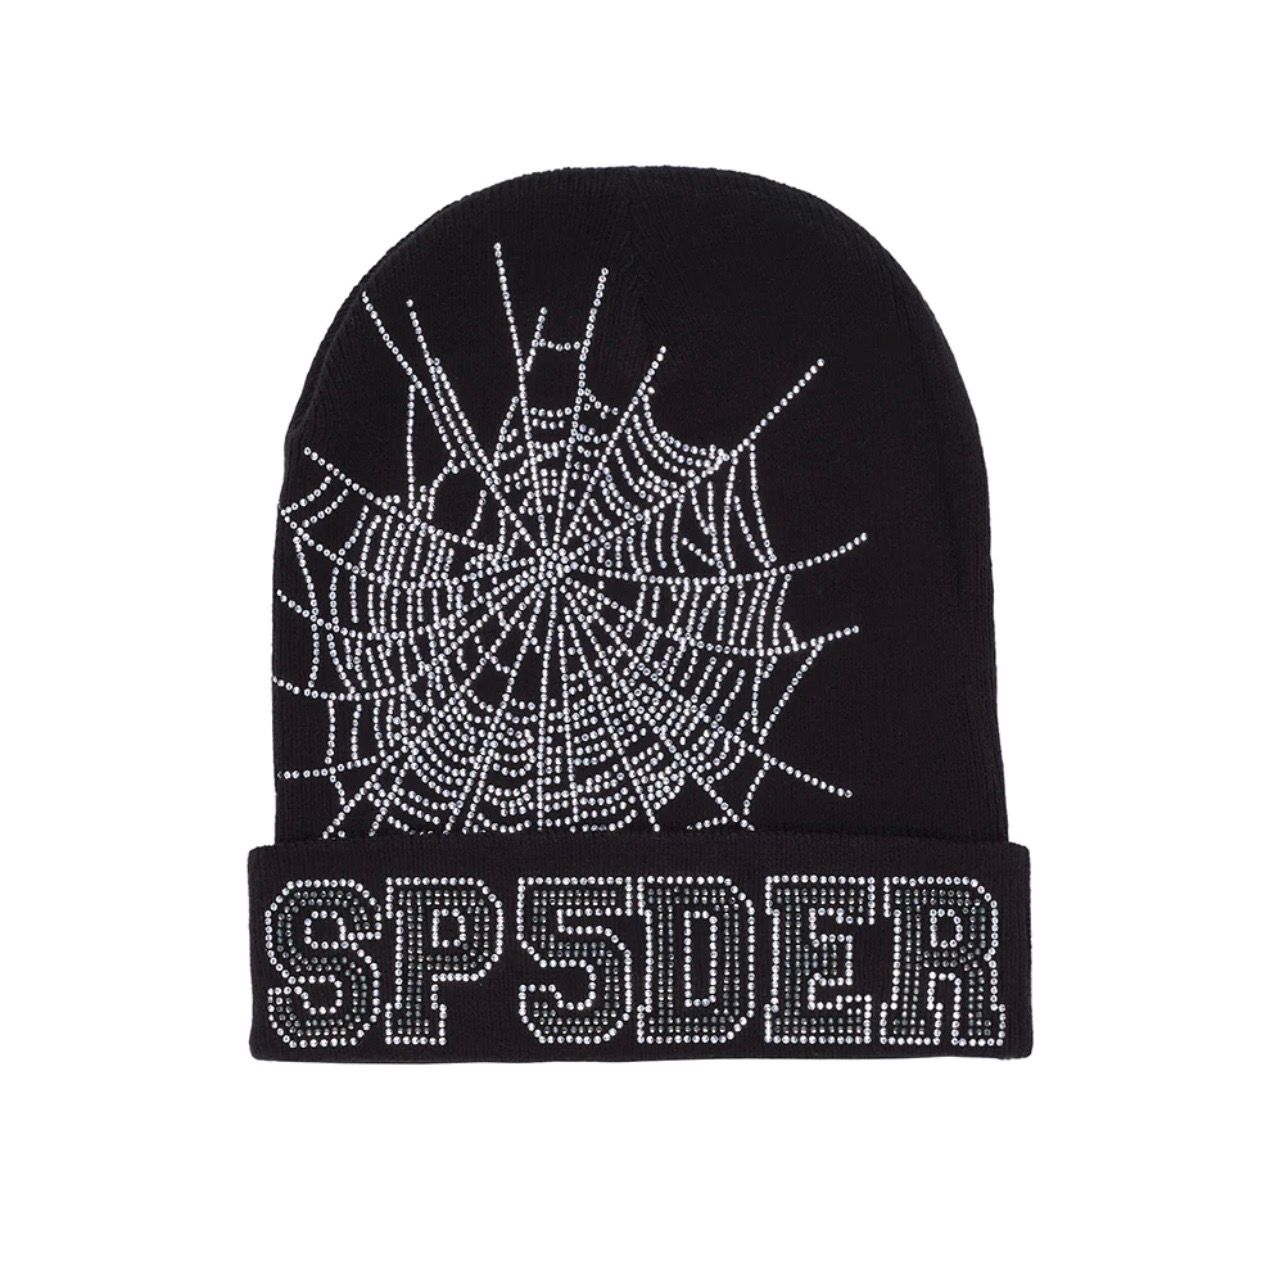 Pre-owned Hats X Spider Worldwide Offers Sp5der Spider Worldwide Black Web Beanie